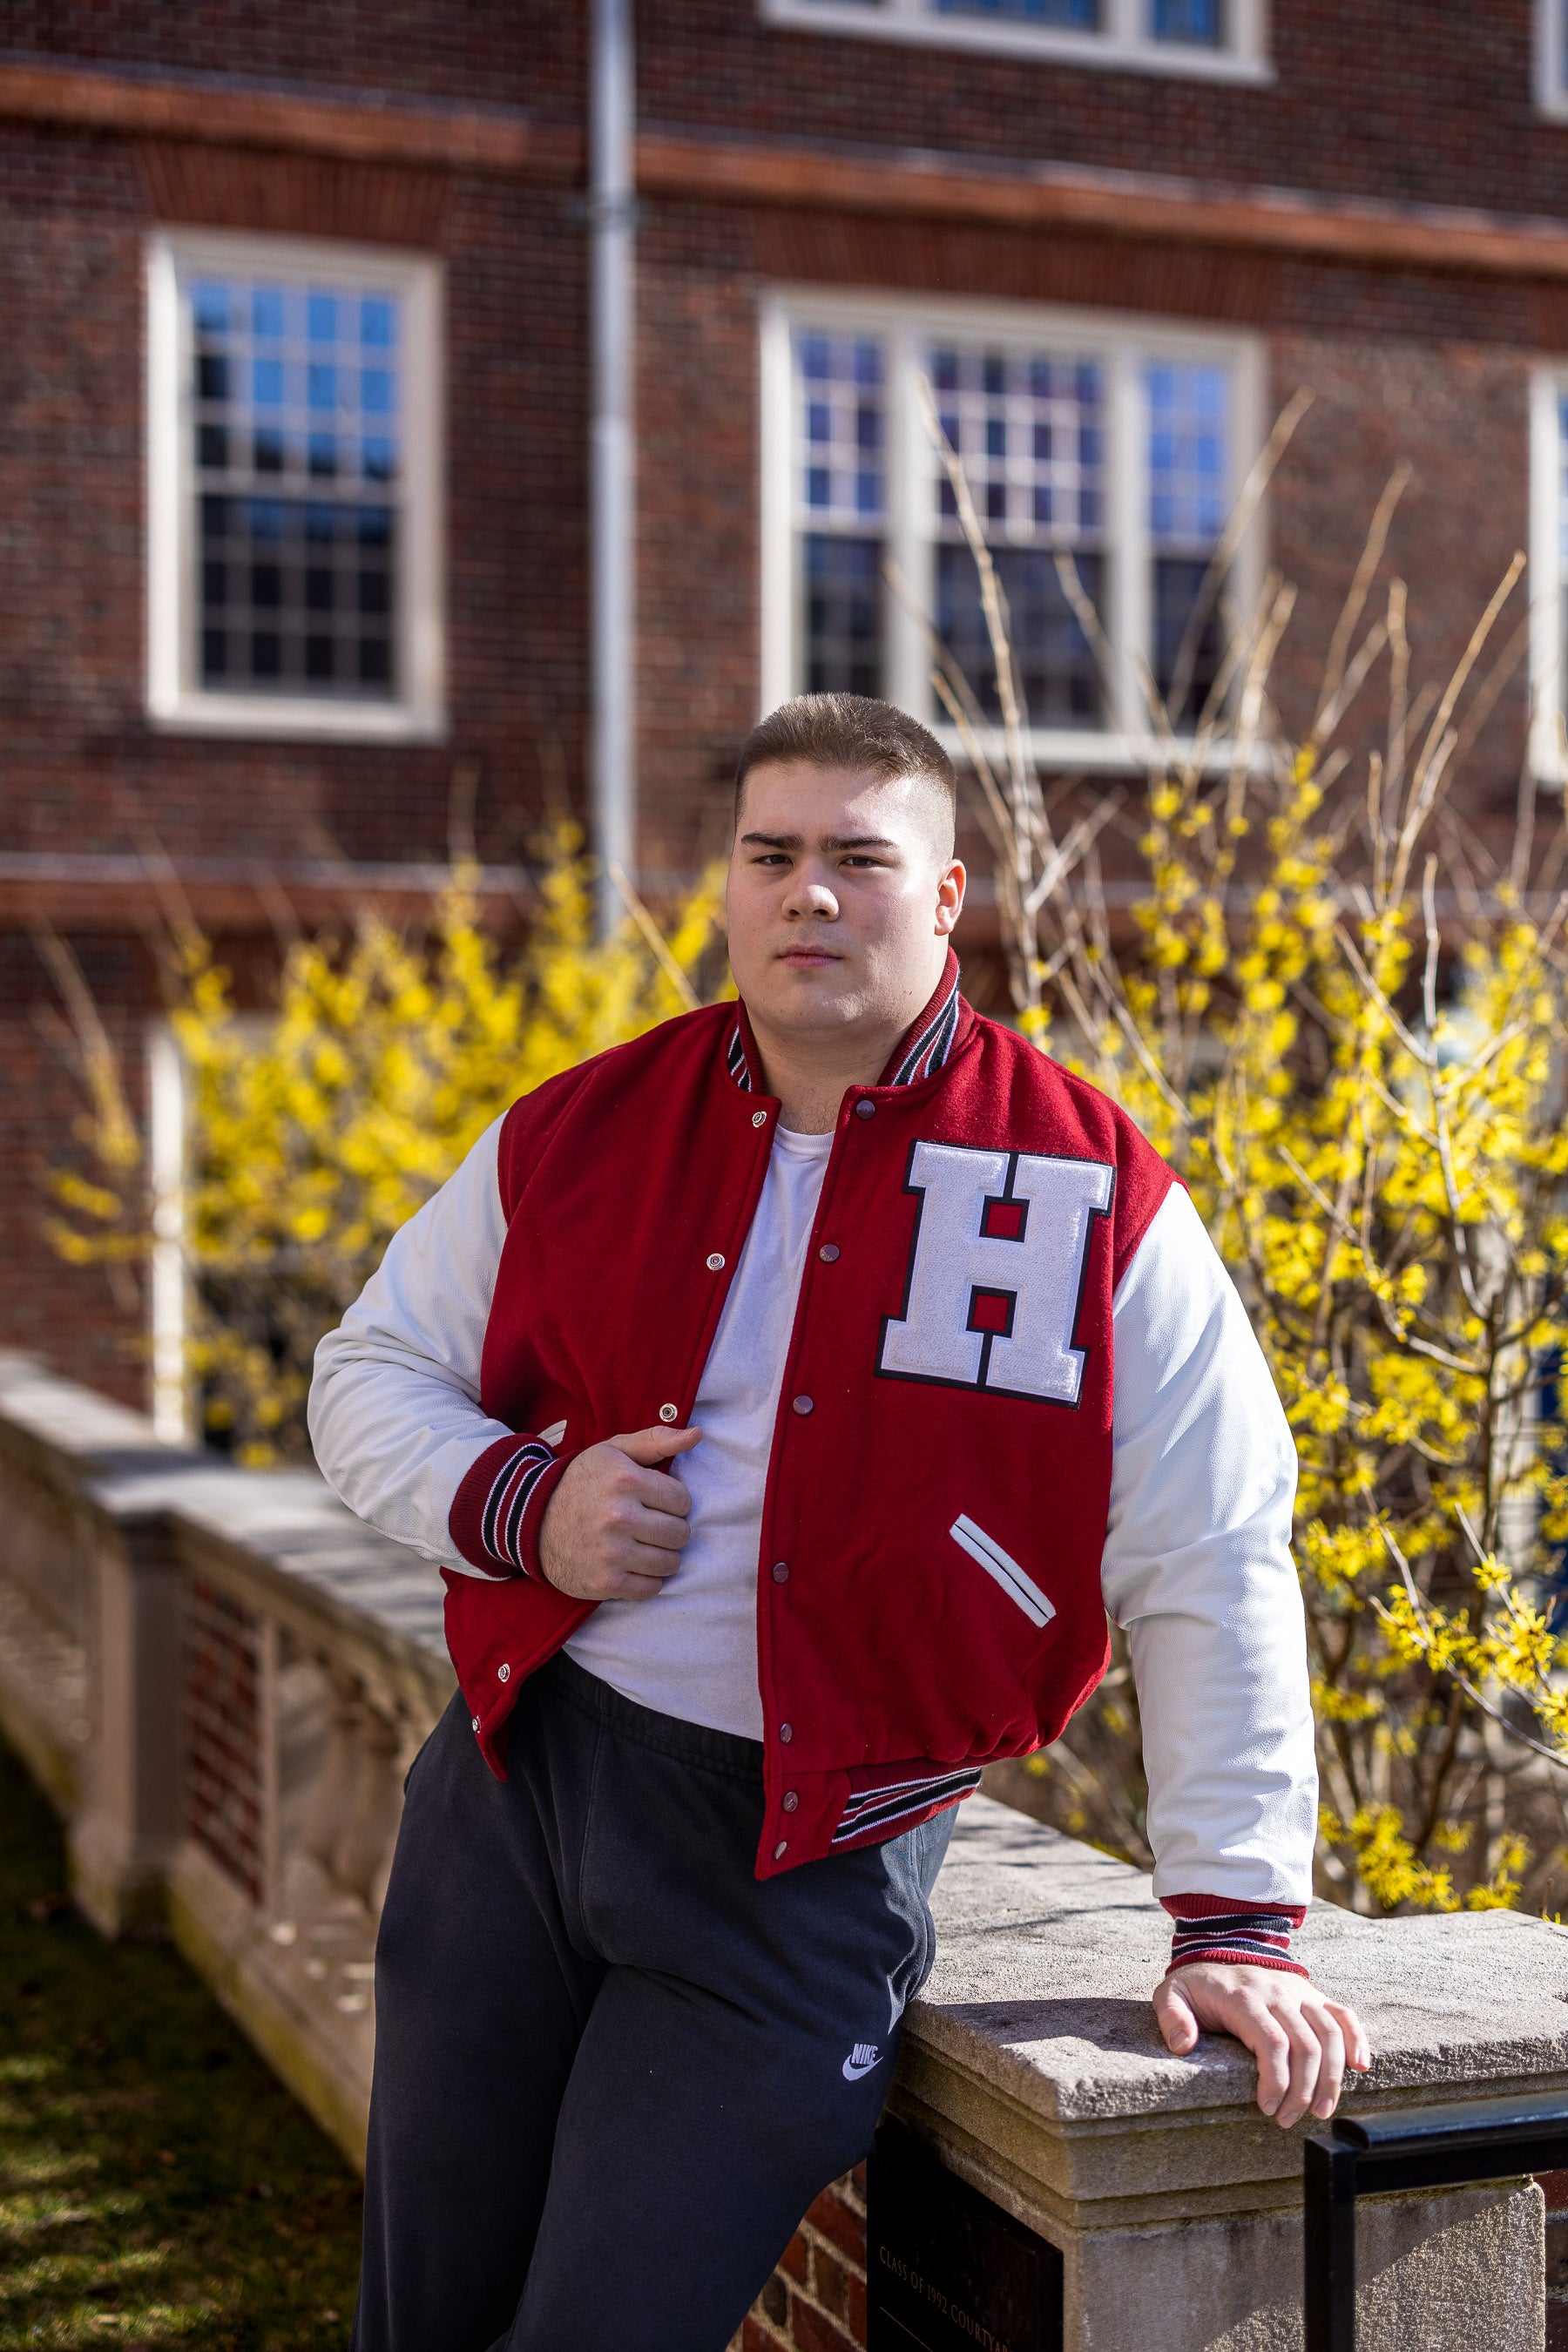 The Harvard Varsity Jacket